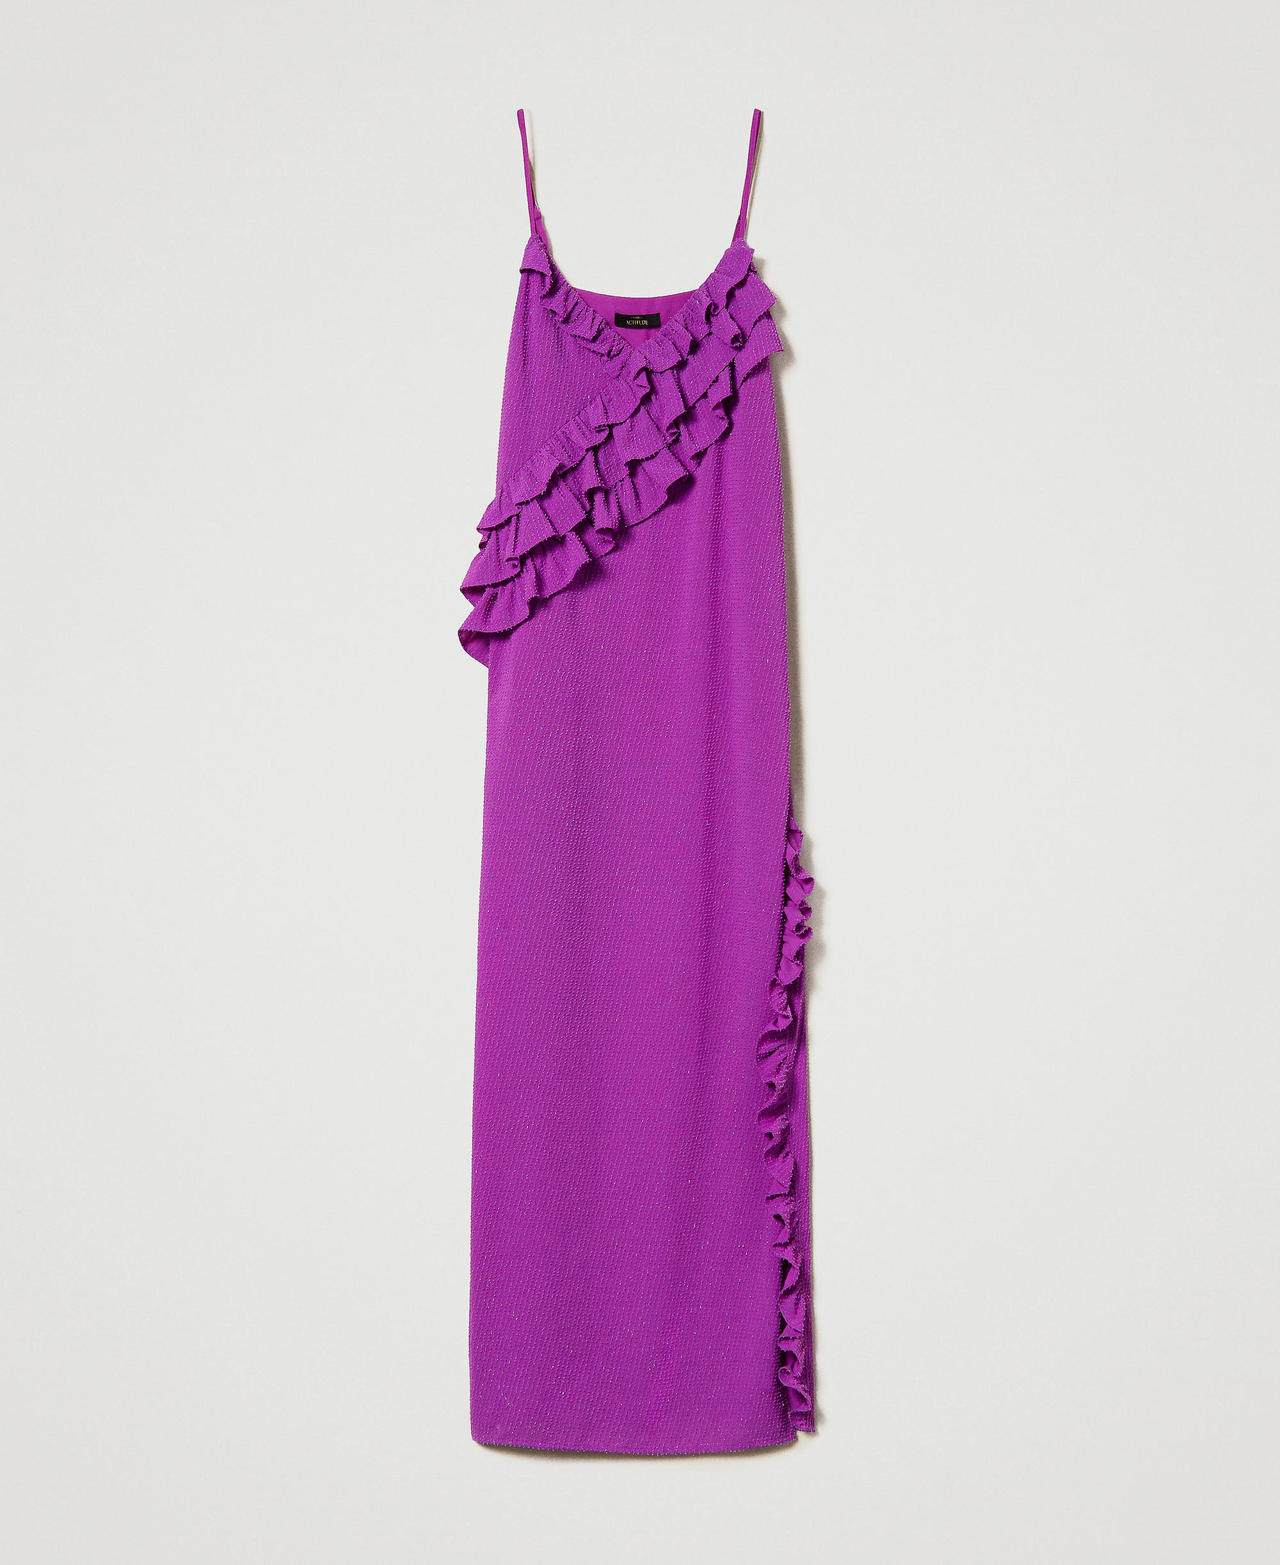 Robe longue nuisette en crêpe fil coupé Violet « Sparkling Grape » Femme 241AP2333-0S